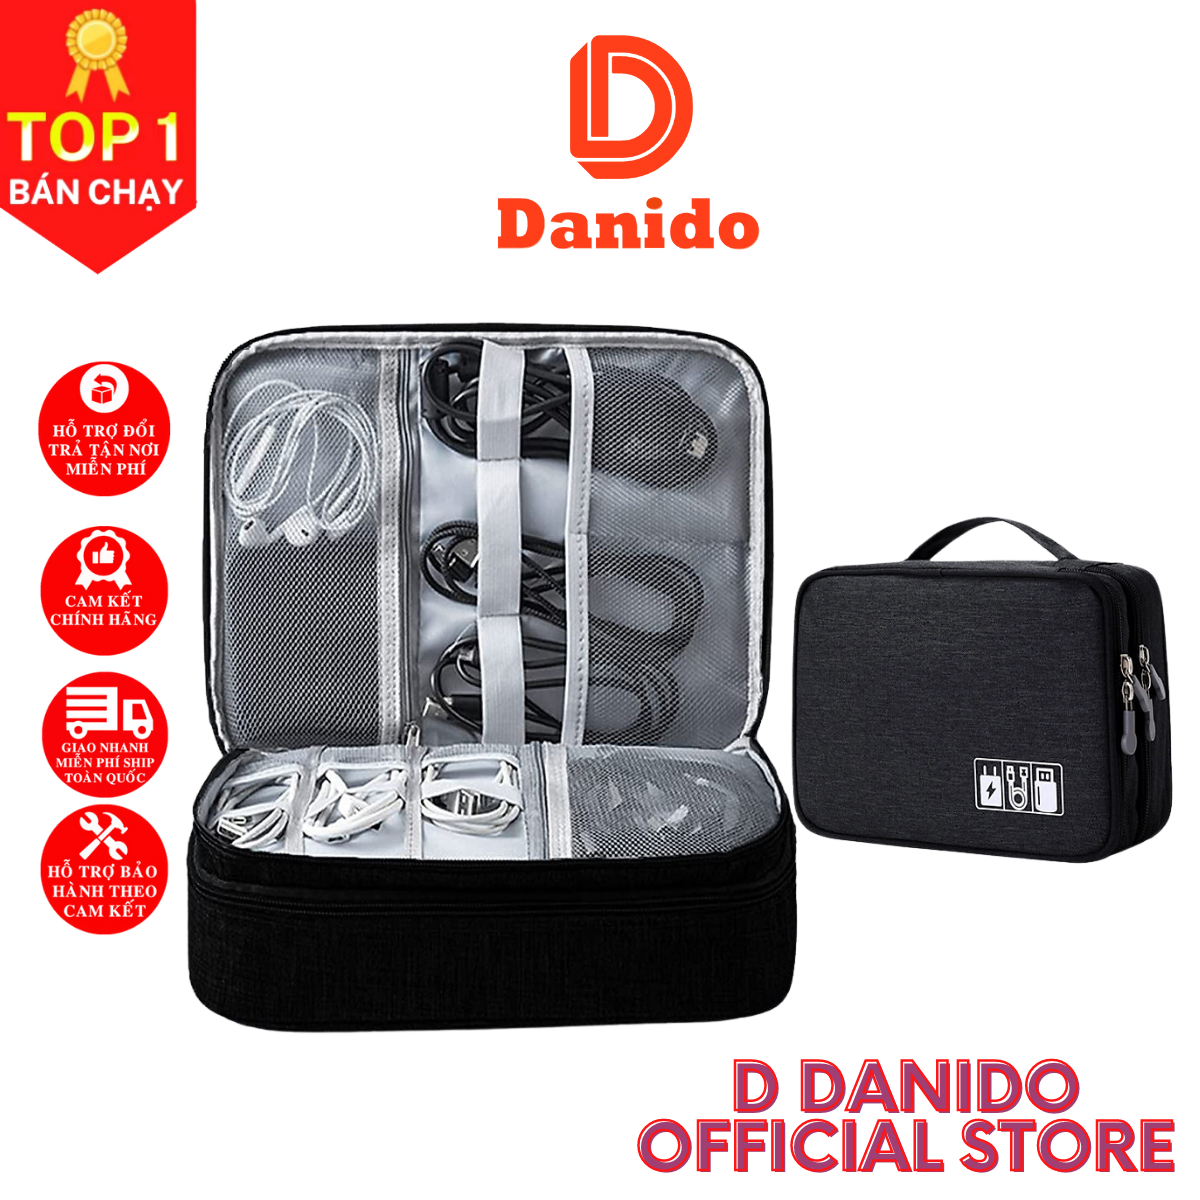 Túi đựng phụ kiện điện thoại 2 ngăn lớn cải tiến nhiều ngăn chống nước, chống sốc - Túi đựng bảo vệ phụ kiện điện thoại máy tính bảng cao cấp chính hãng D Danido 4